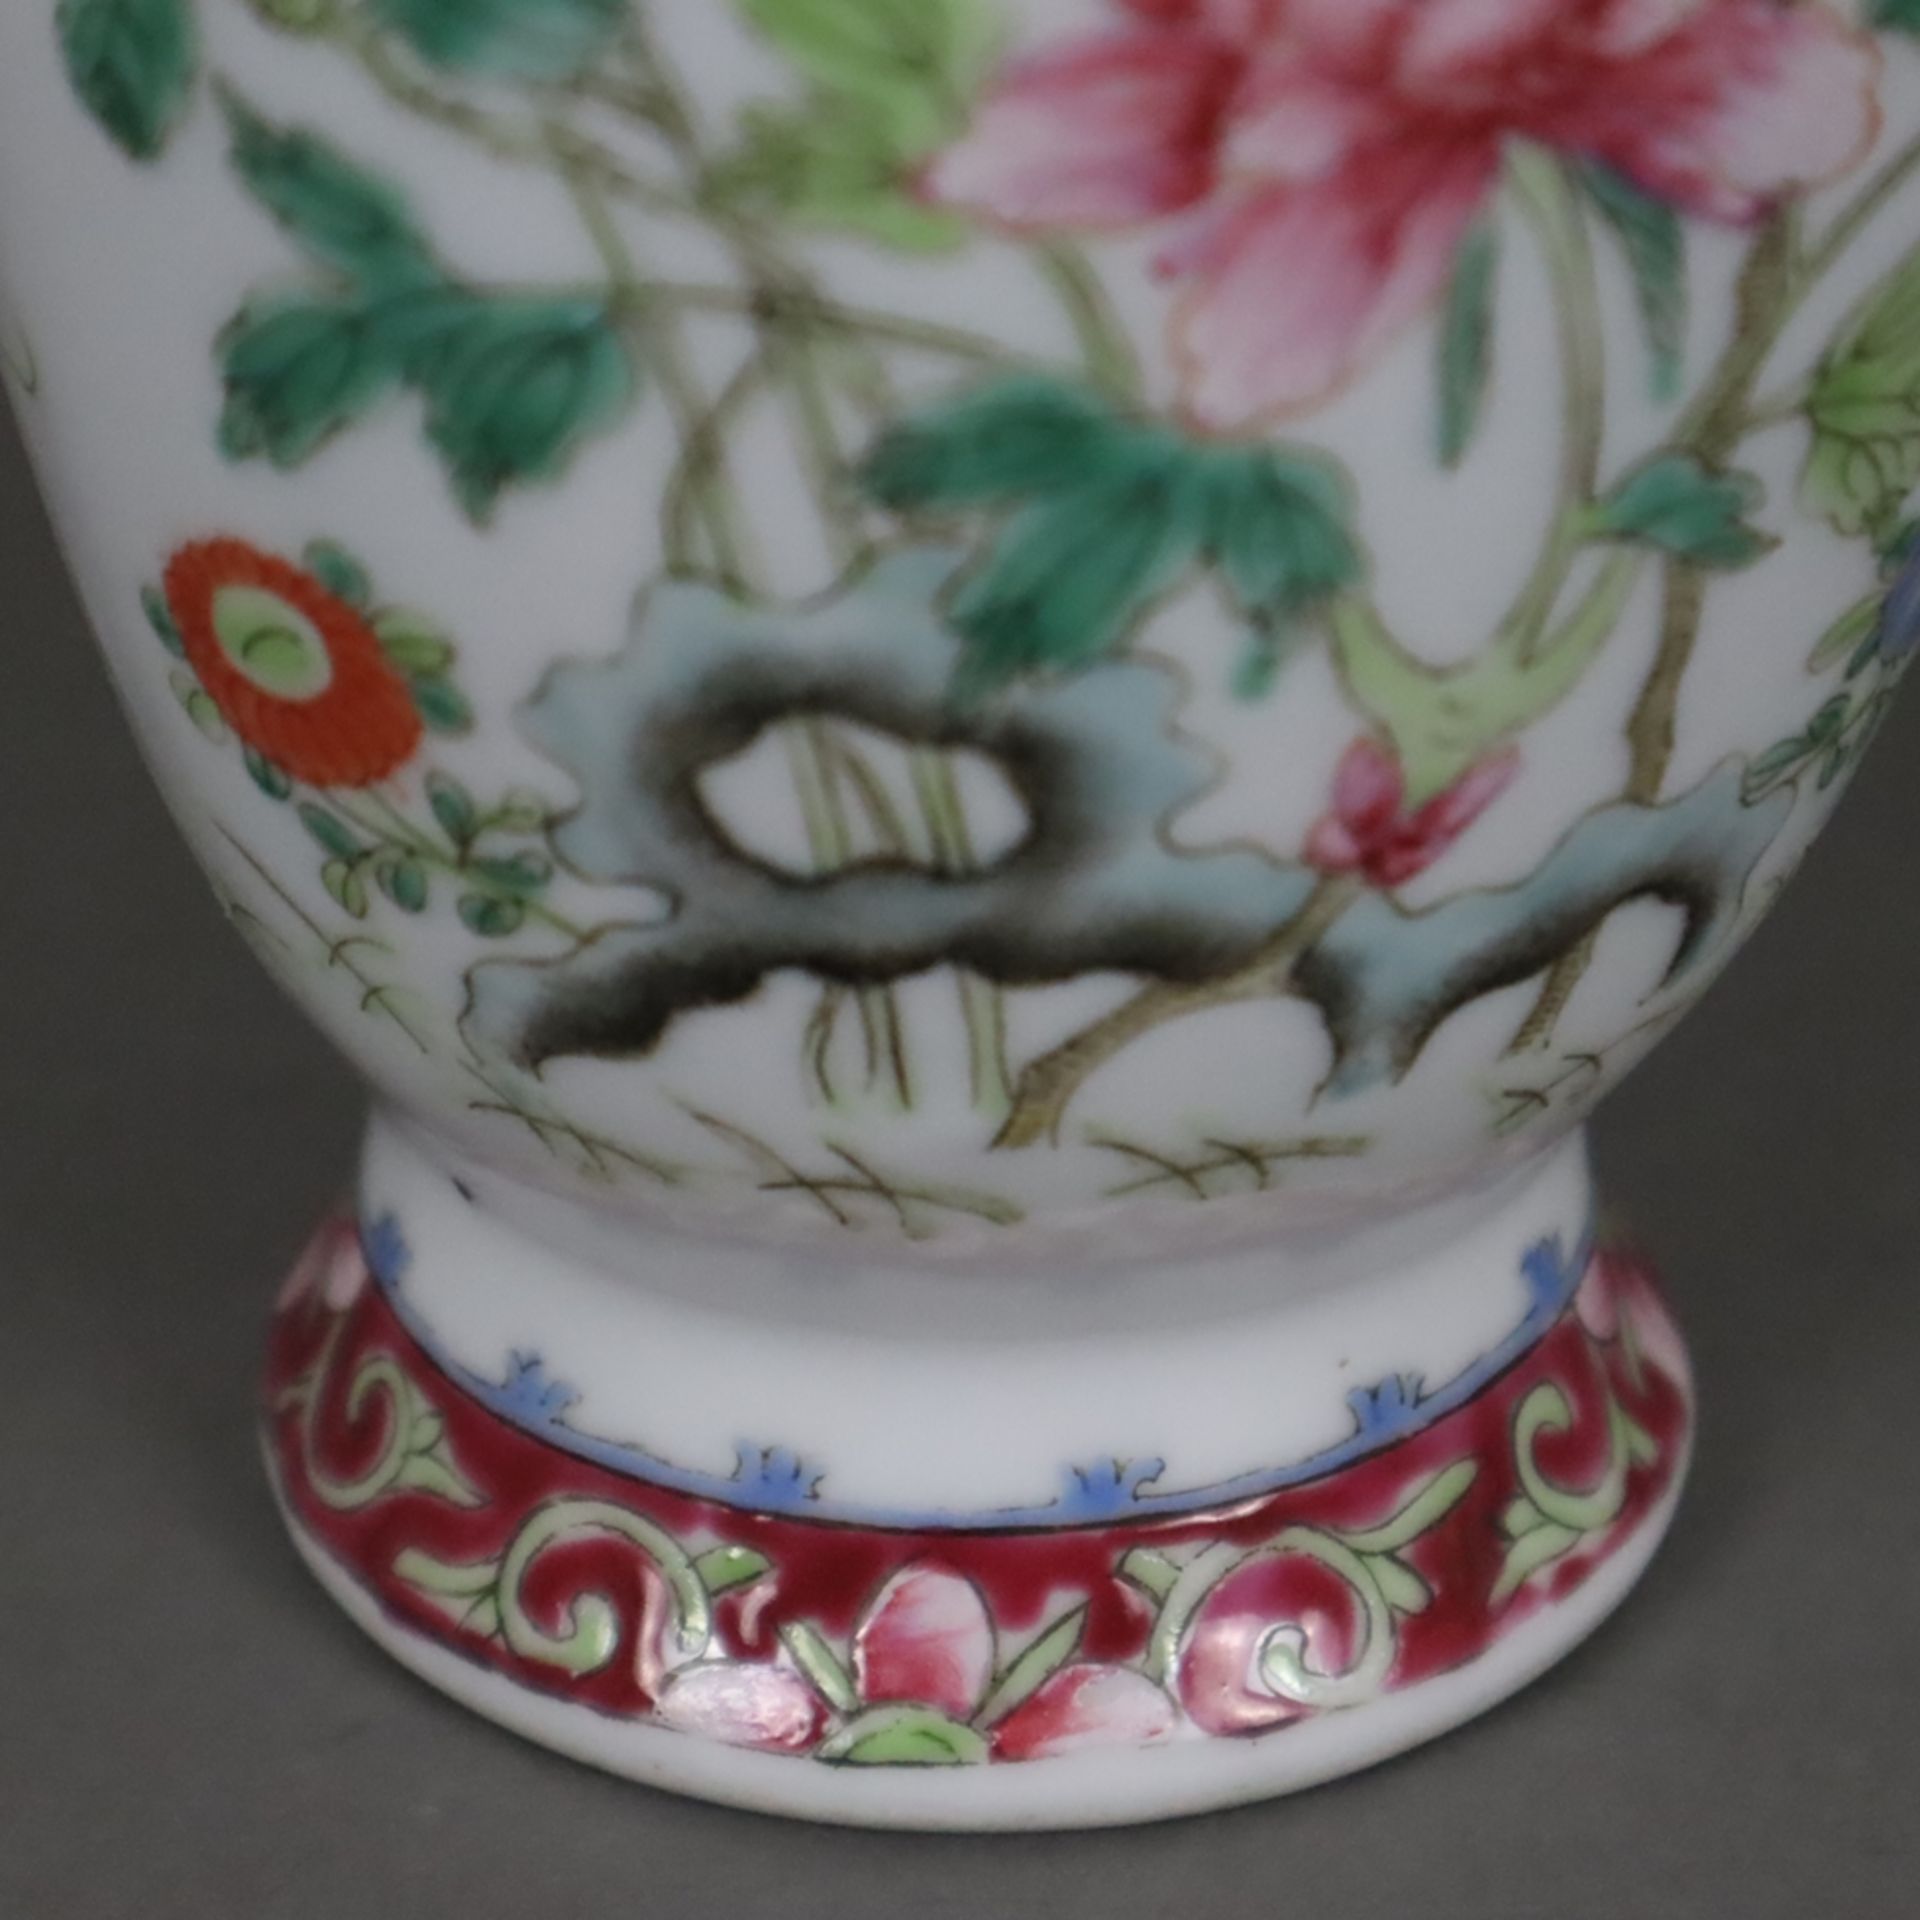 Famille rose-Vase - China, Republik-Zeit, gefußte Balusterform, floraler Dekor von Päonien und Kürb - Image 9 of 10